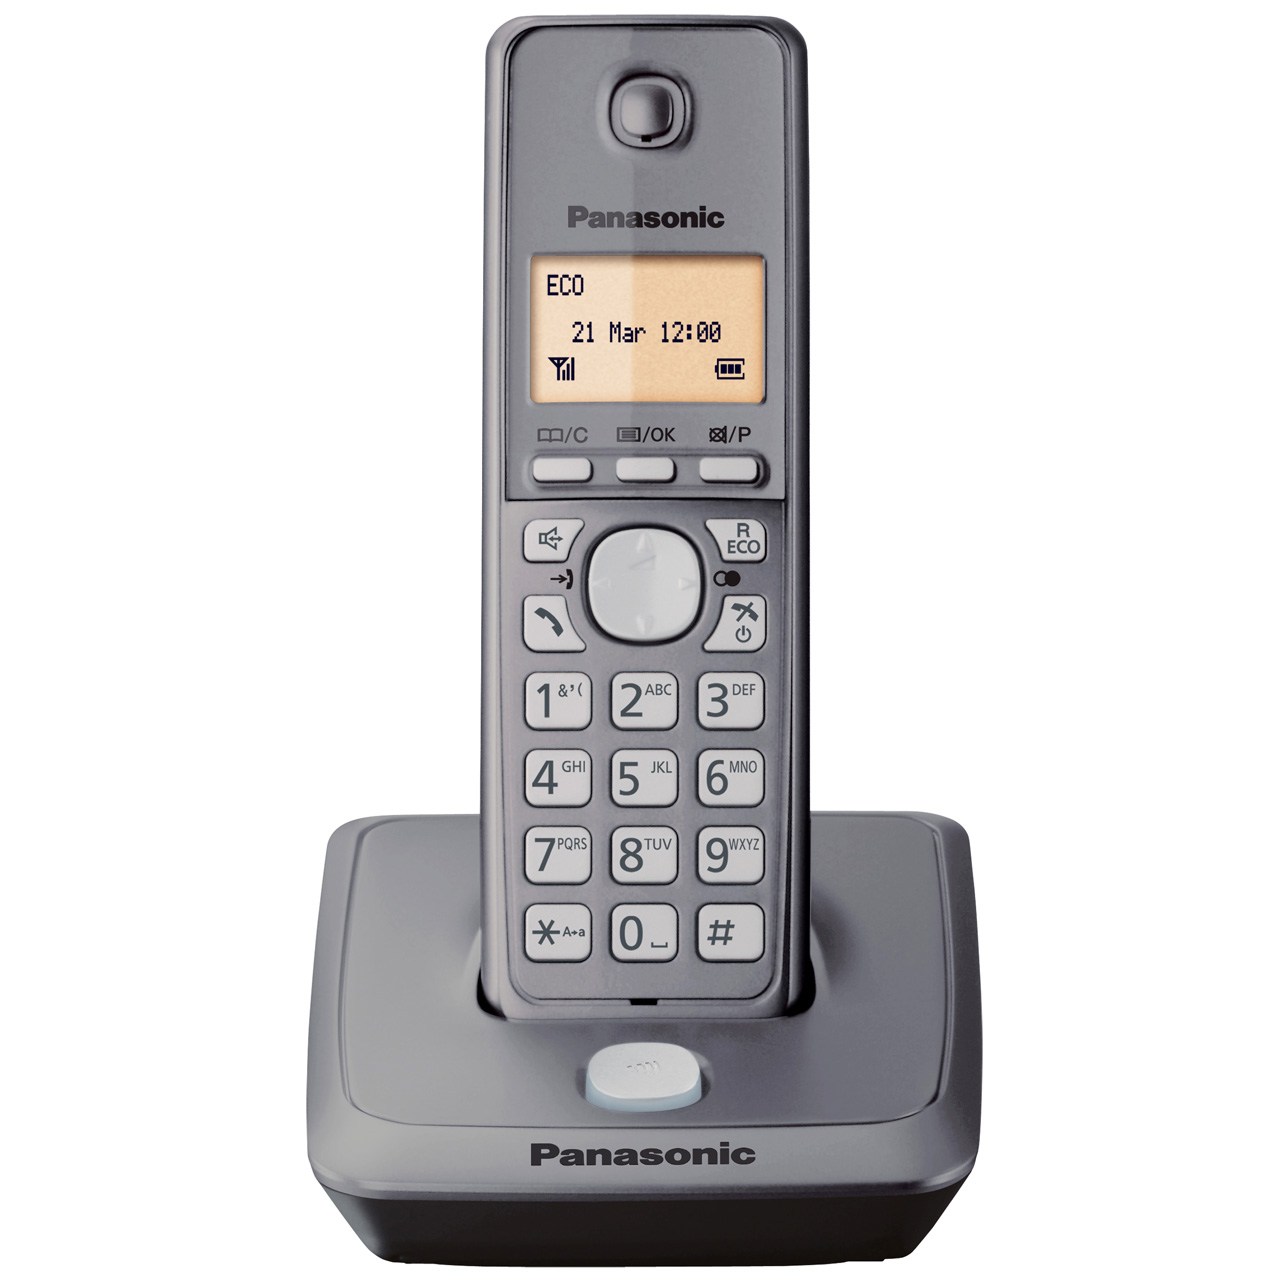 تلفن بی سیم پاناسونیک مدل KX-TG2711